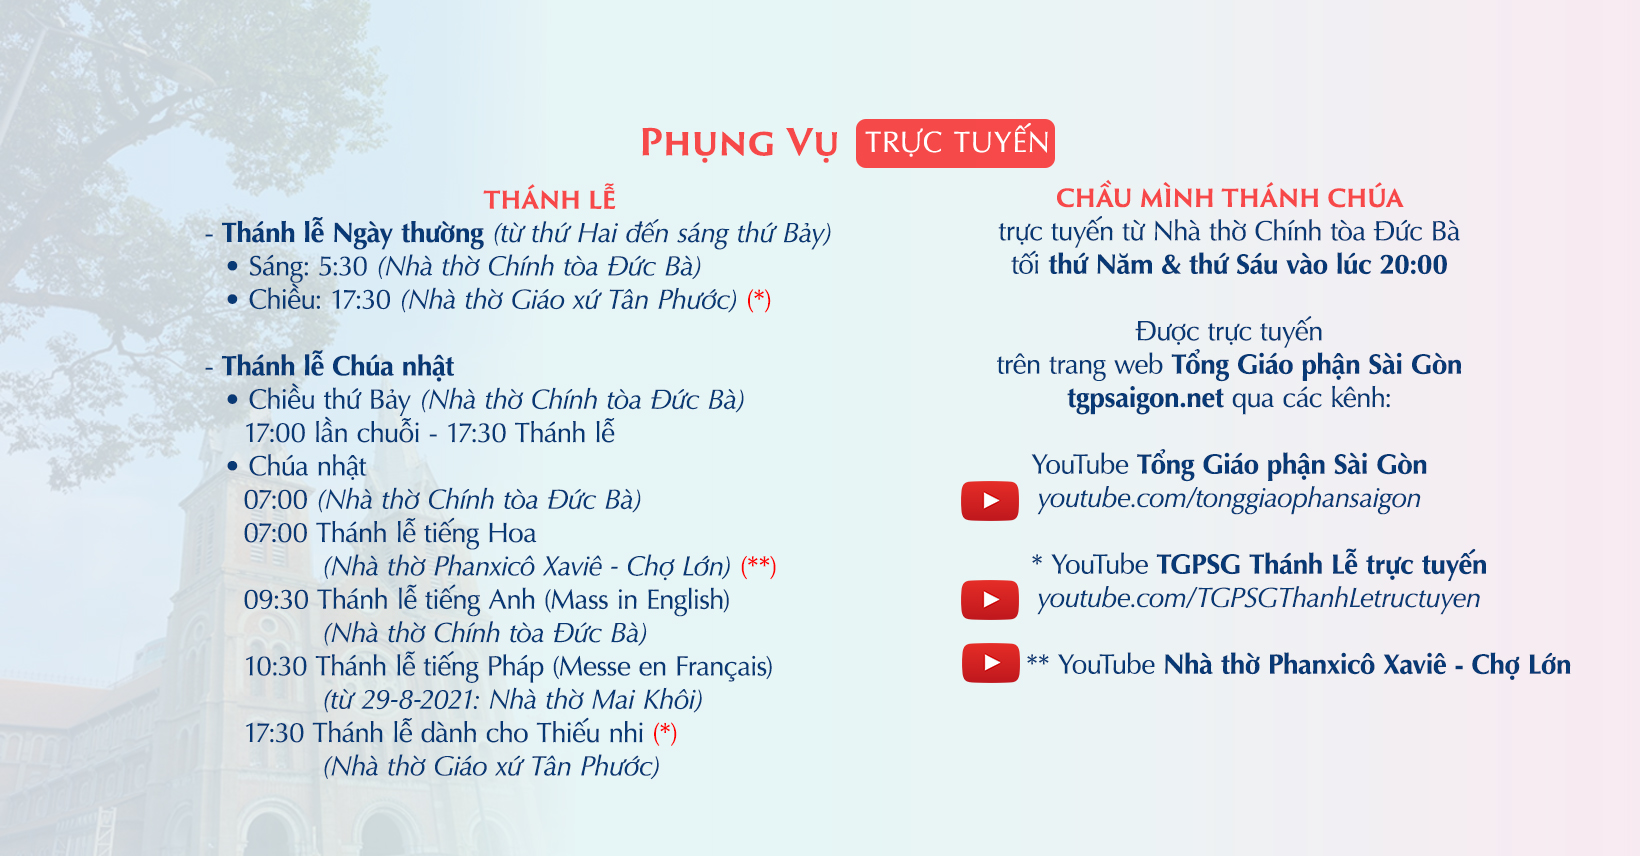 Tổng Giáo phận Sài Gòn: Phụng vụ trực tuyến từ 4-10-2021 đến 9-10-2021